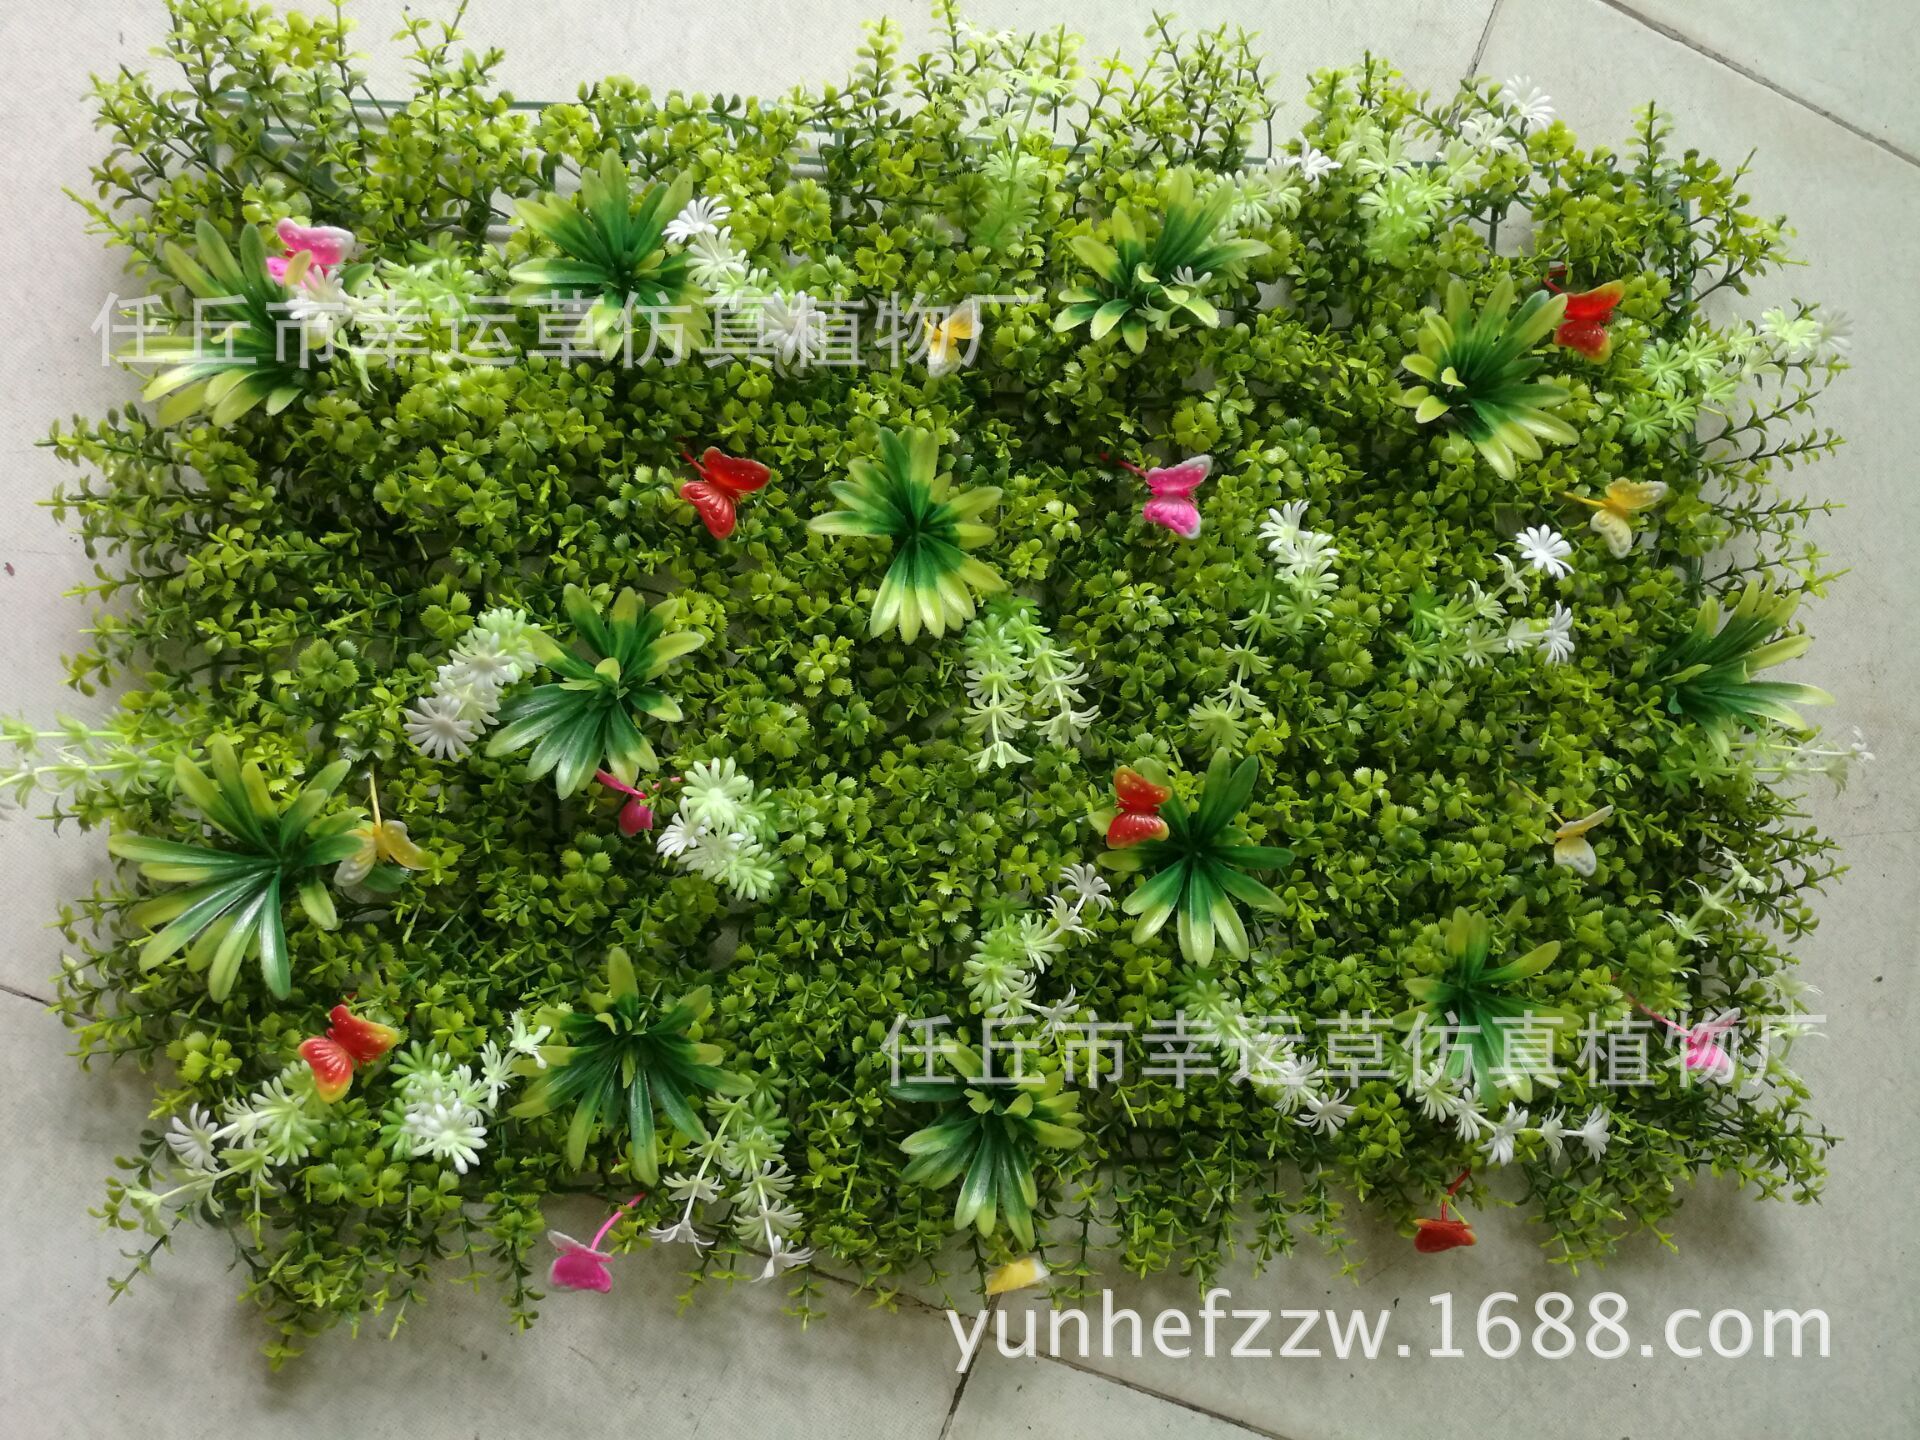 仿真草皮_仿真室外草皮 定制绿植装饰植物墙墙面背景 外墙假植景观 - 阿里巴巴